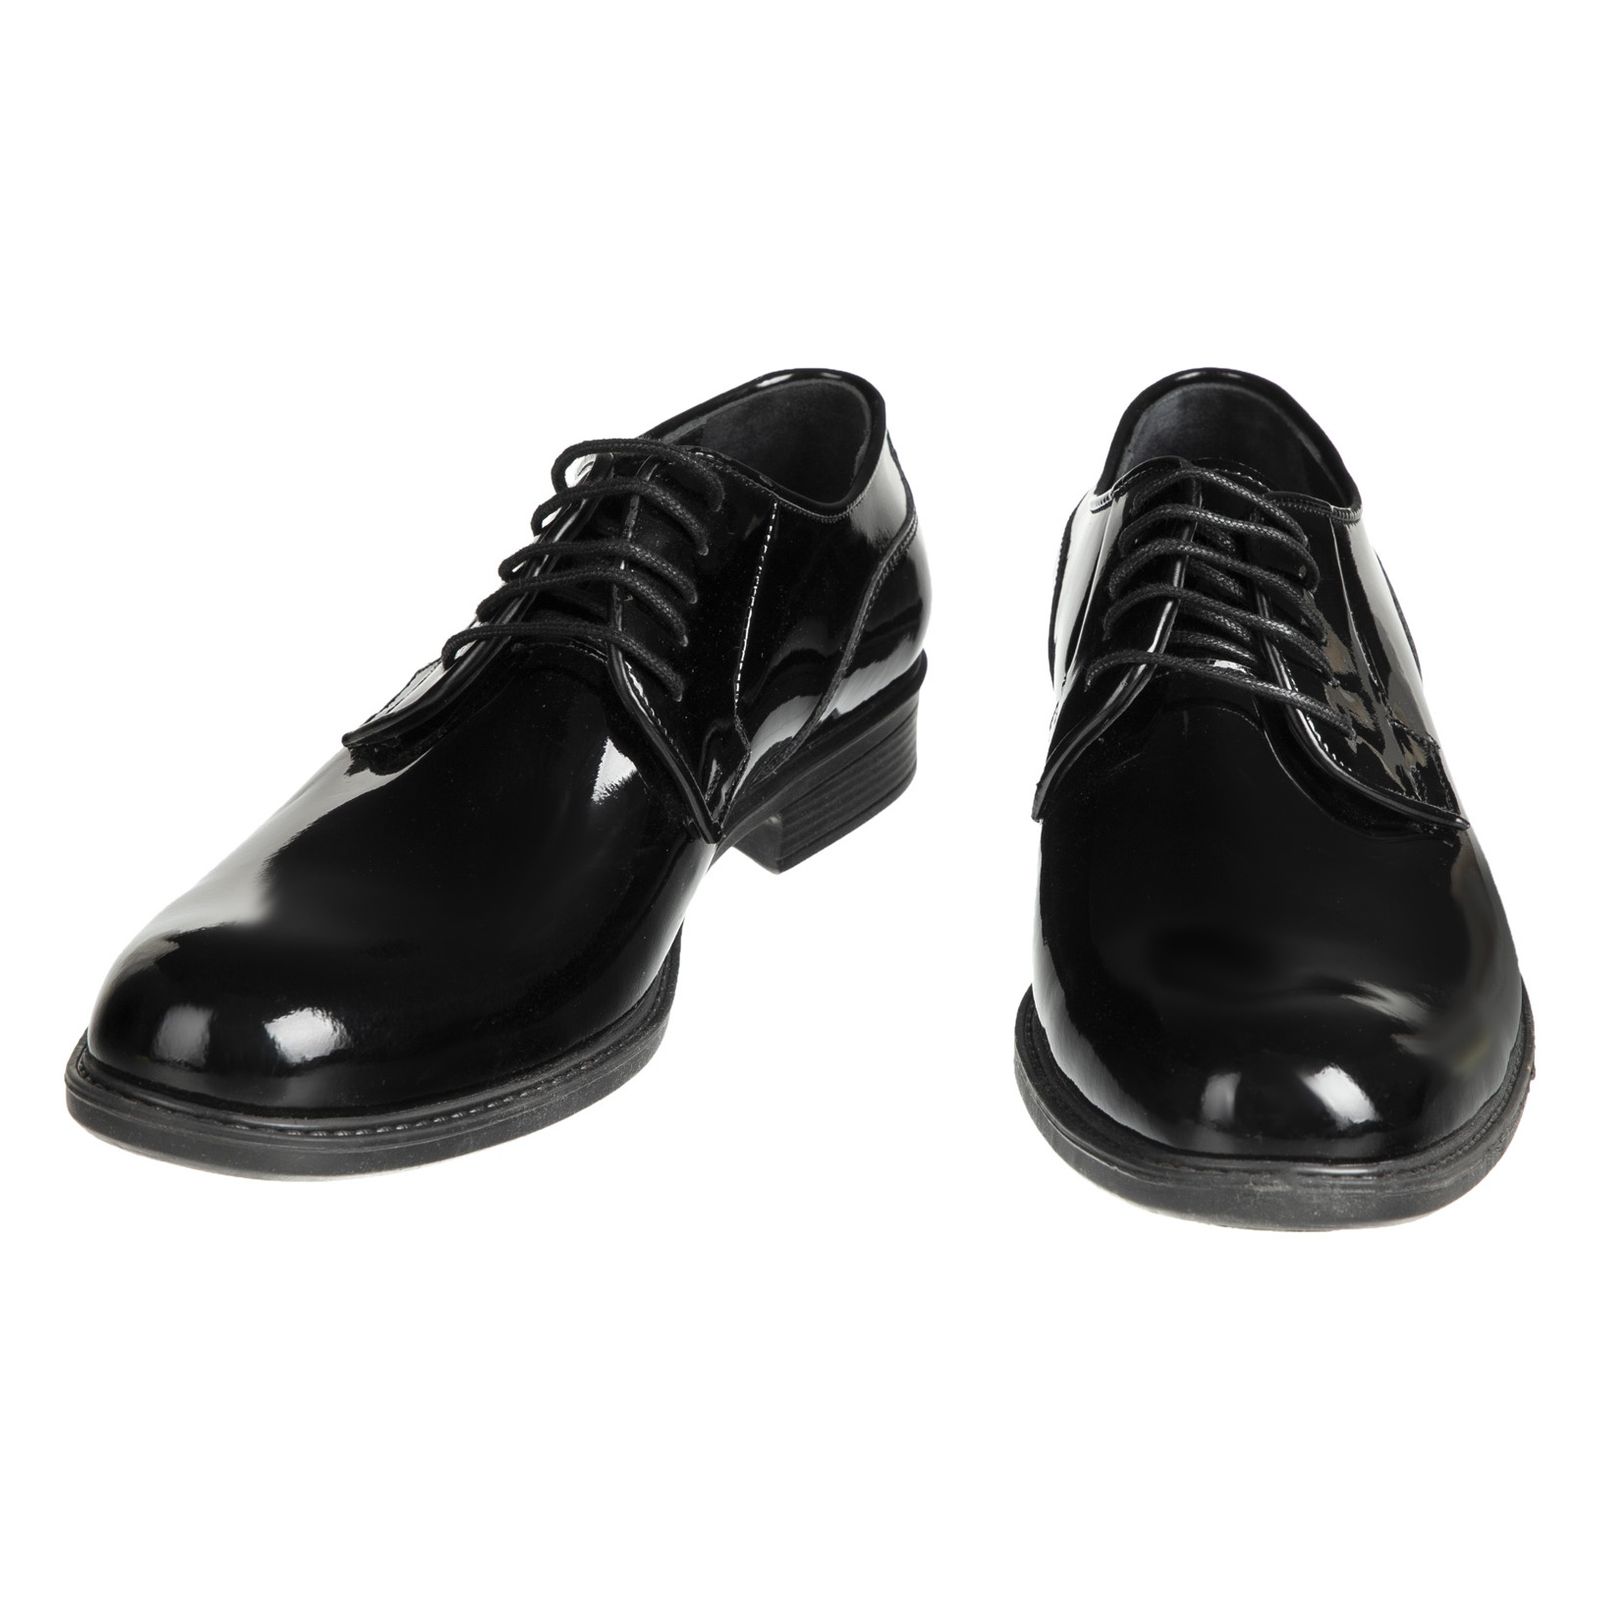 کفش مردانه دلفارد مدل 7219e503-101 - مشکی - 4